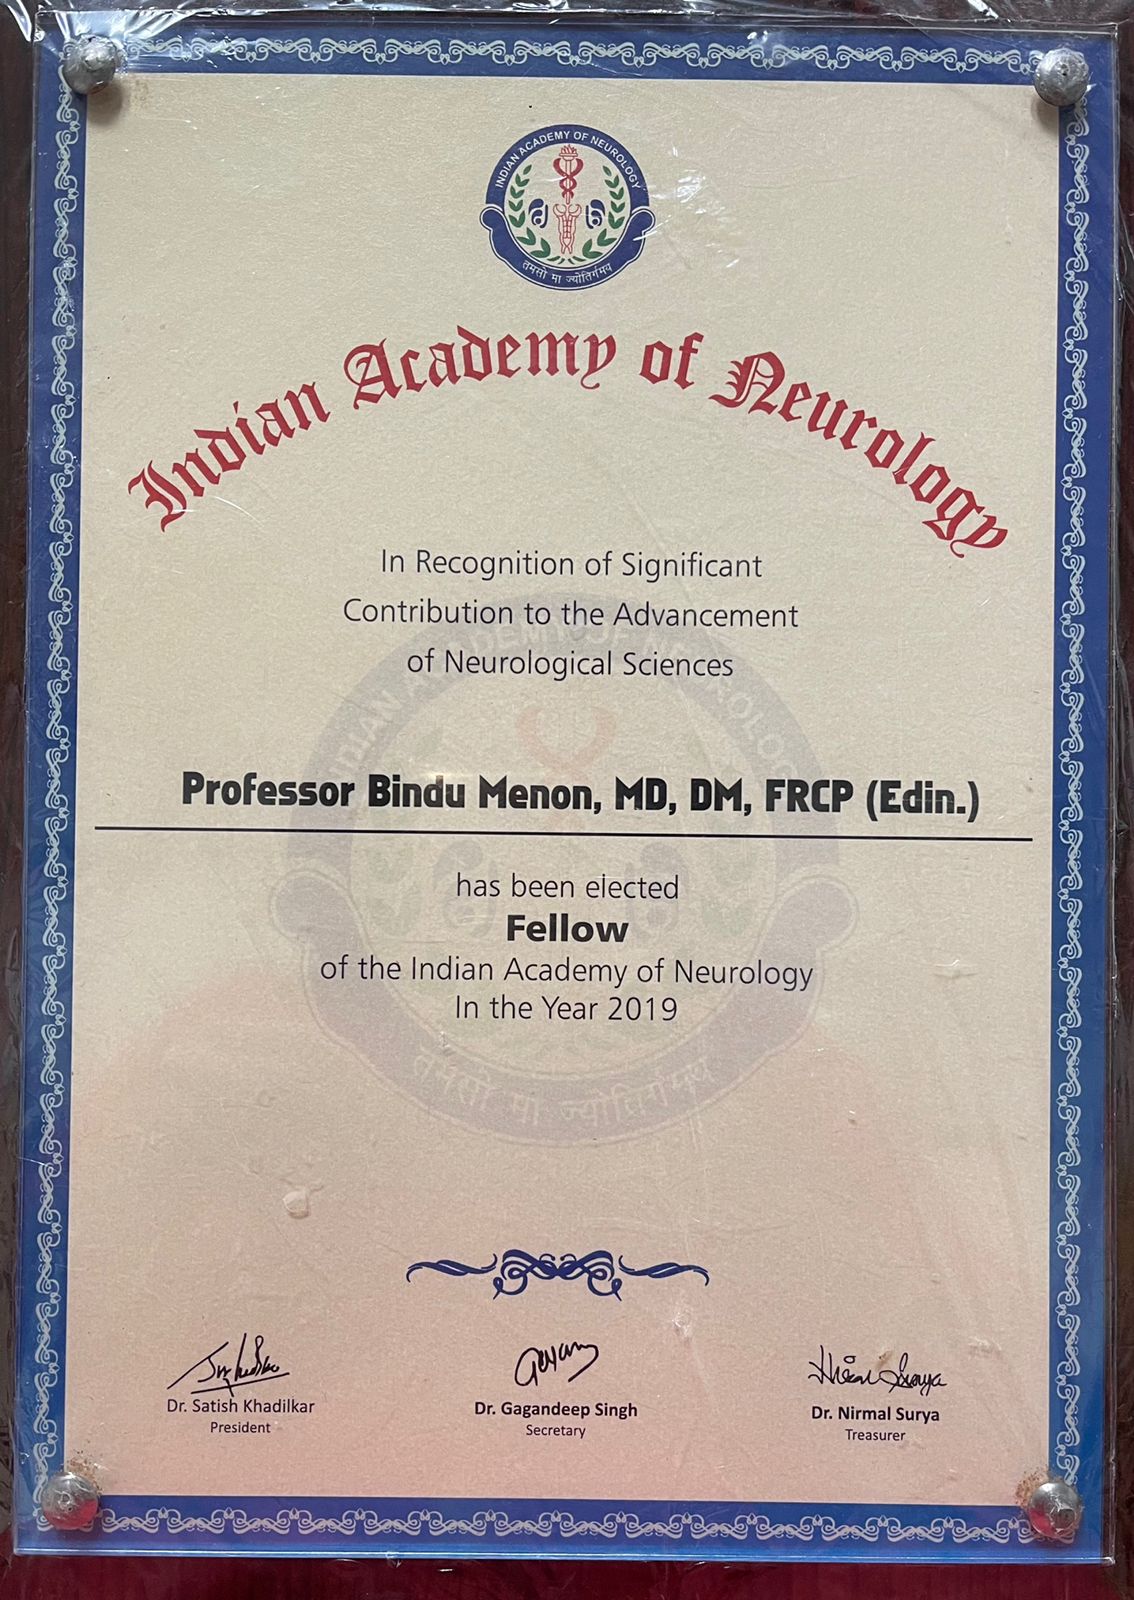 Fellow of Indian Academy of Neurology 2019